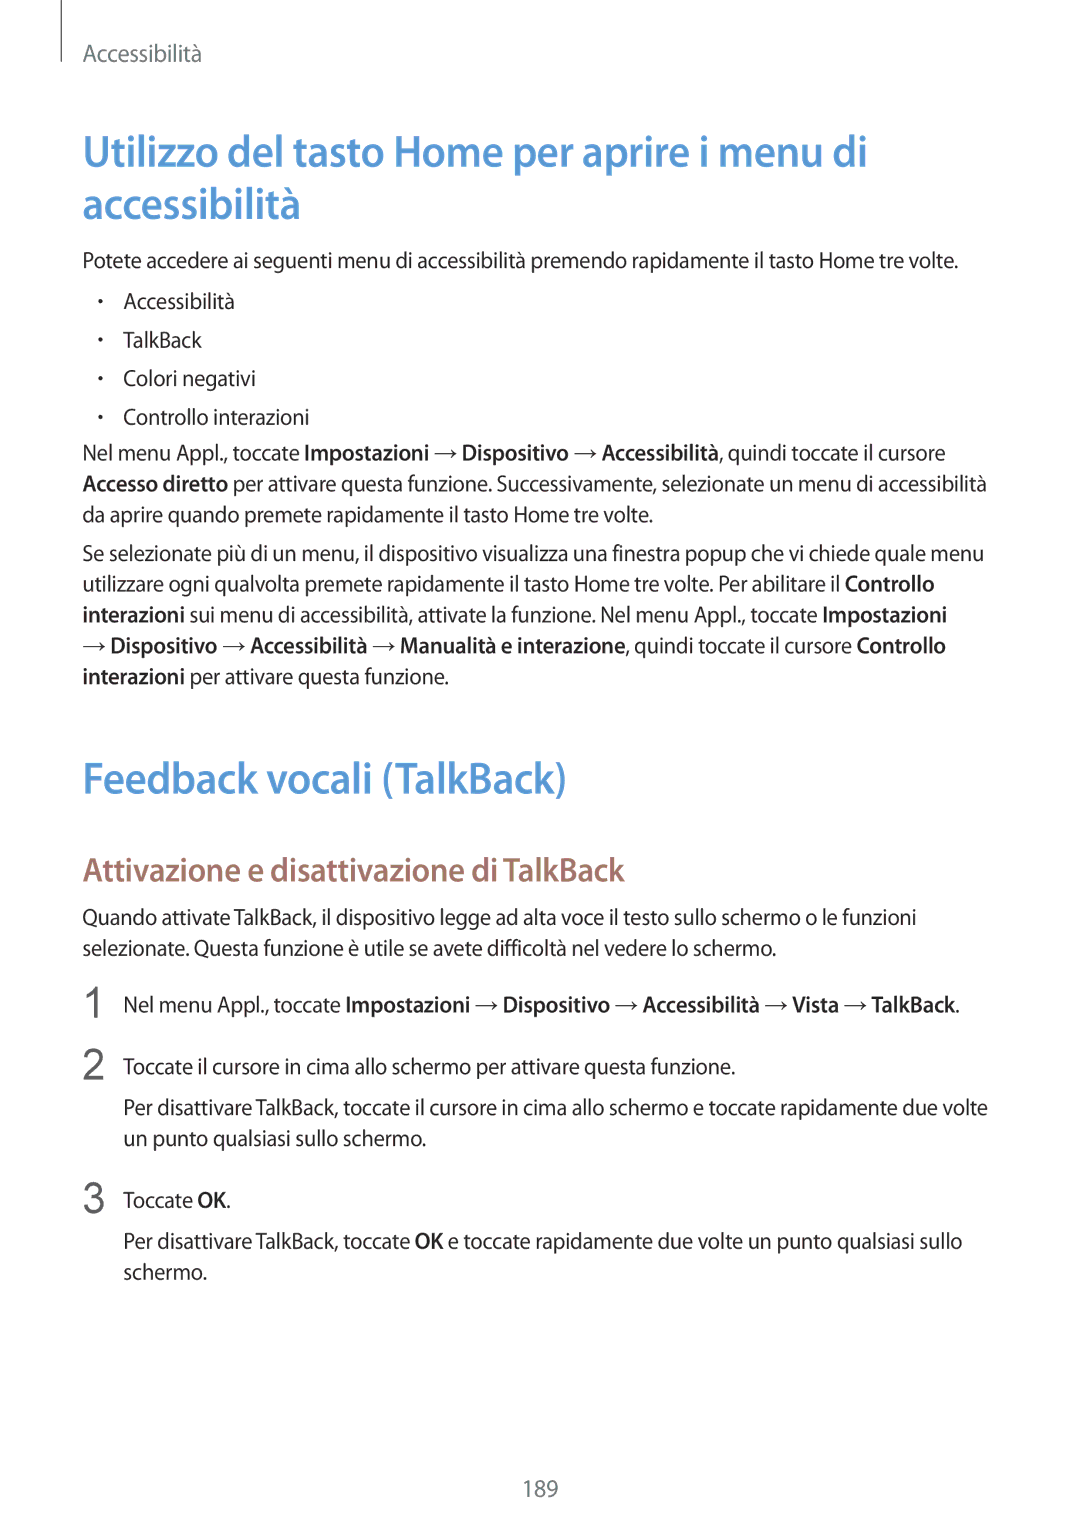 Samsung SM-T805NZWAHUI manual Utilizzo del tasto Home per aprire i menu di accessibilità, Feedback vocali TalkBack 